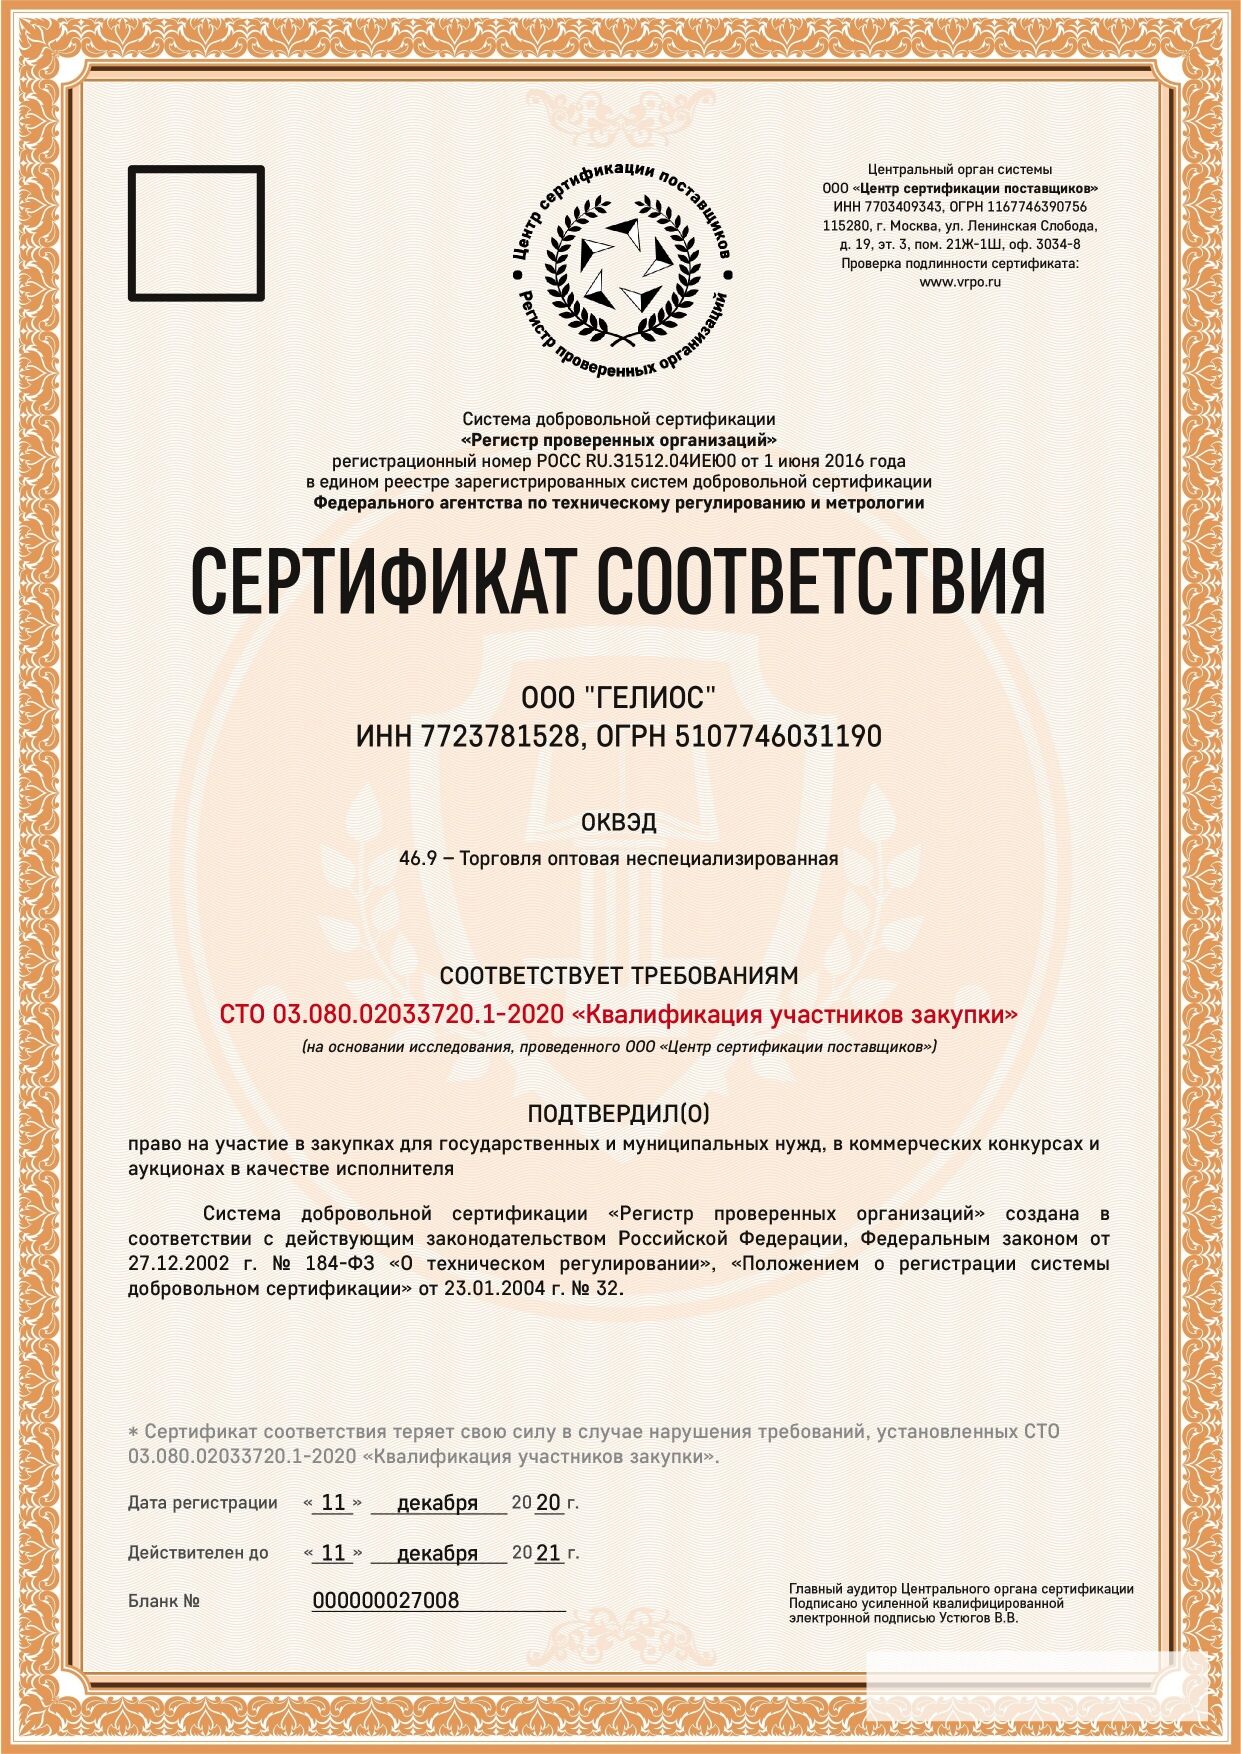 Сертификат соответствия на права в участии в закупках